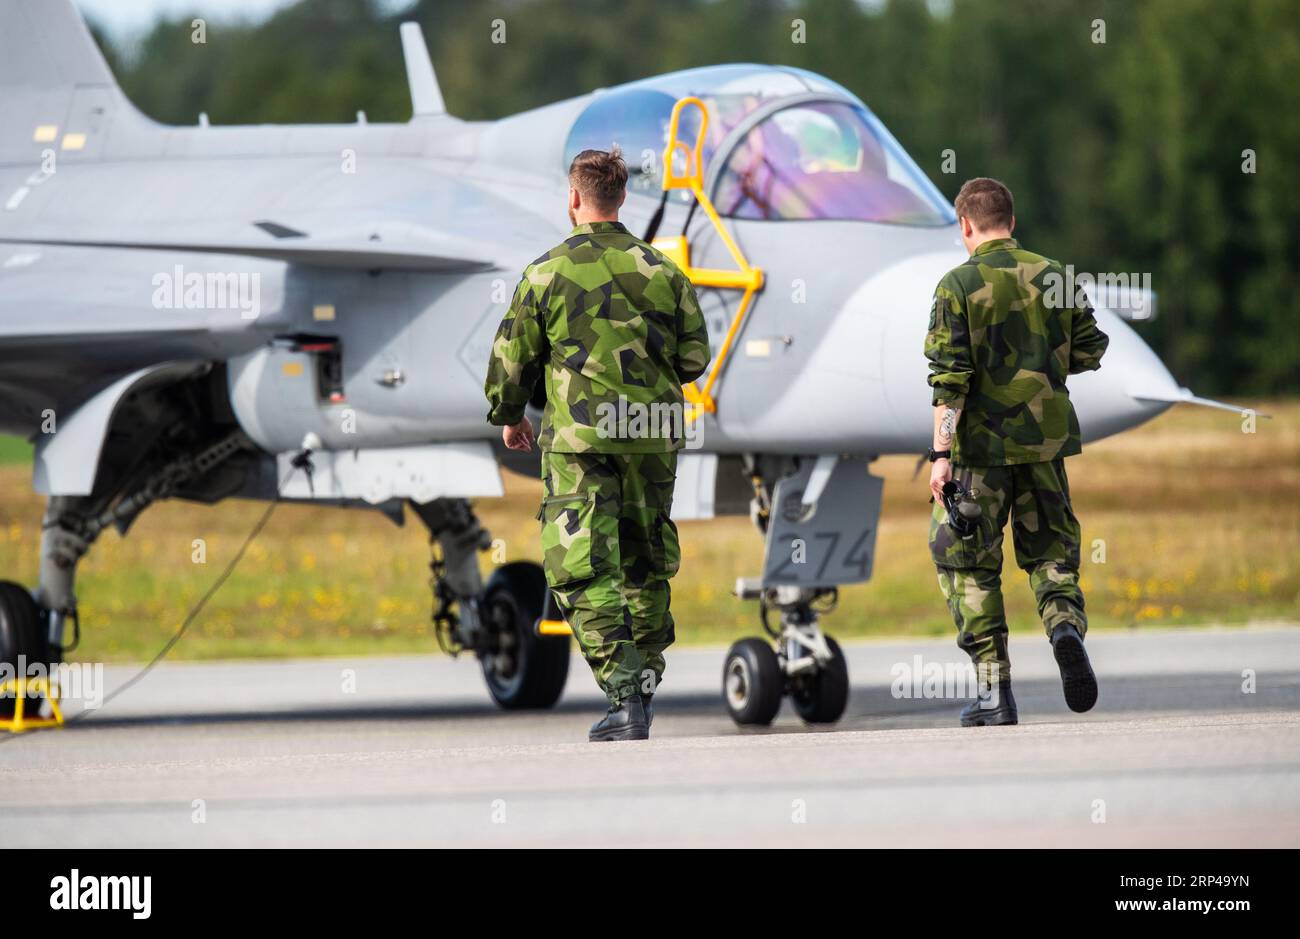 Jas 39 Gripen C, spettacolo aereo, aeroporto di Örebro, Örebro, Svezia. Personale dell'ala Uppland (svedese: Upplands flygflottilj), anche F 16 Uppsala, F 16. Foto Stock